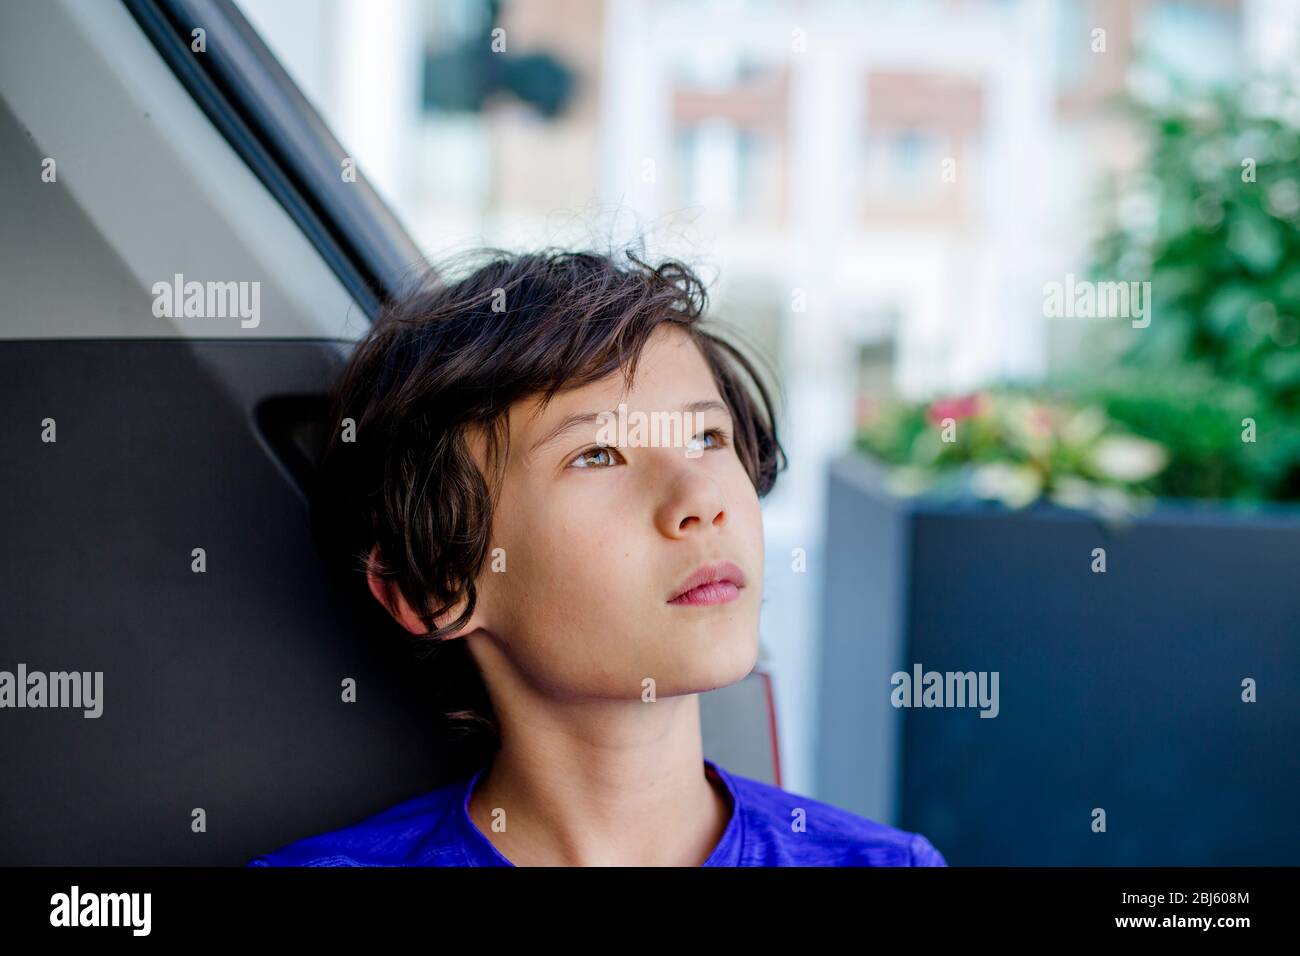 Un jeune garçon se penche dans le tronc d'un minibus regardant le ciel Banque D'Images